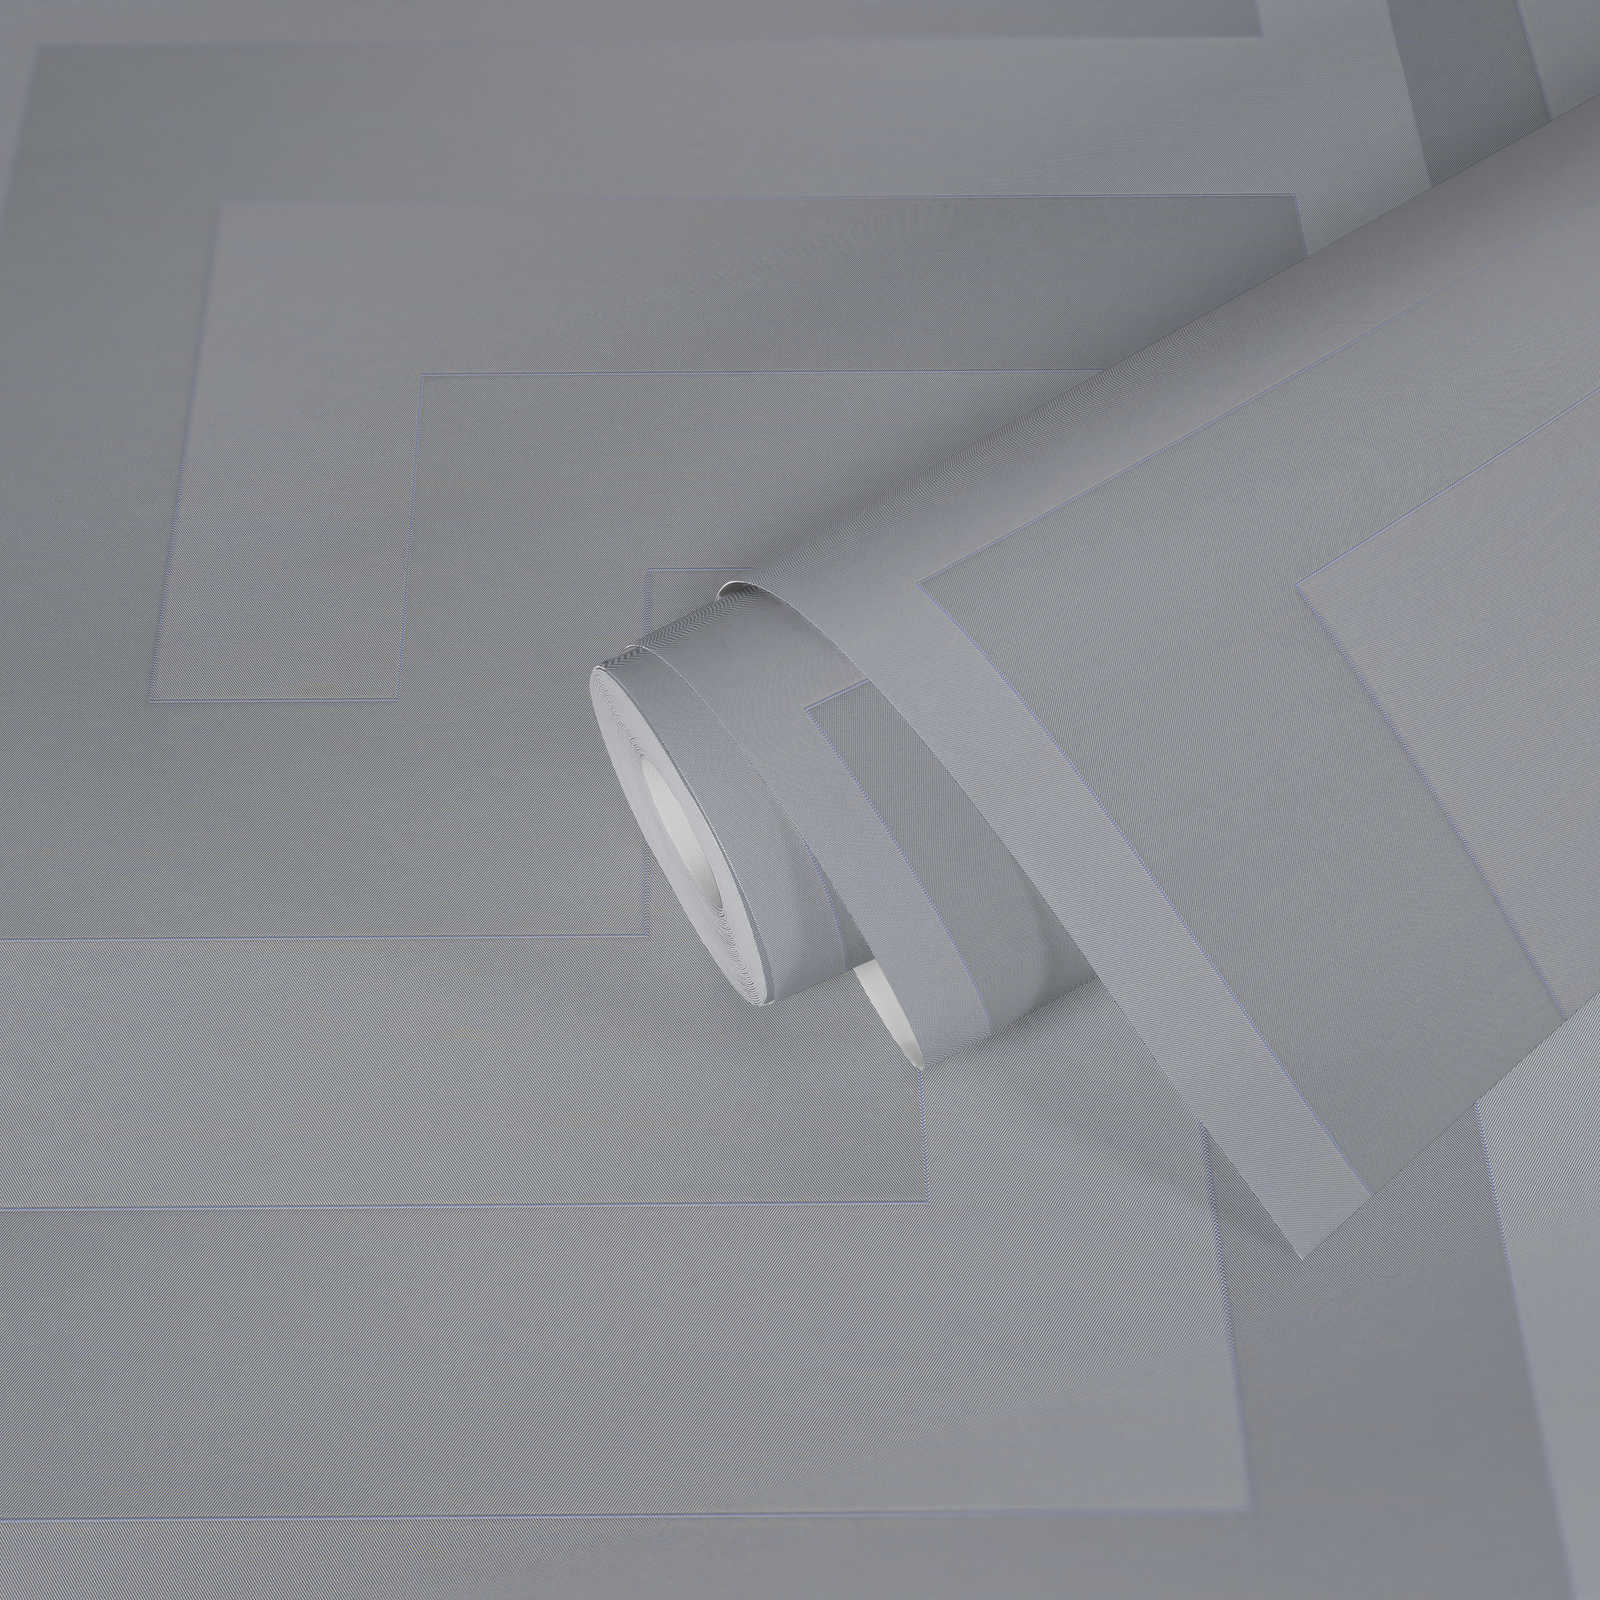             VERSACE zilverkleurig behangpapier met structuureffect - metallic
        